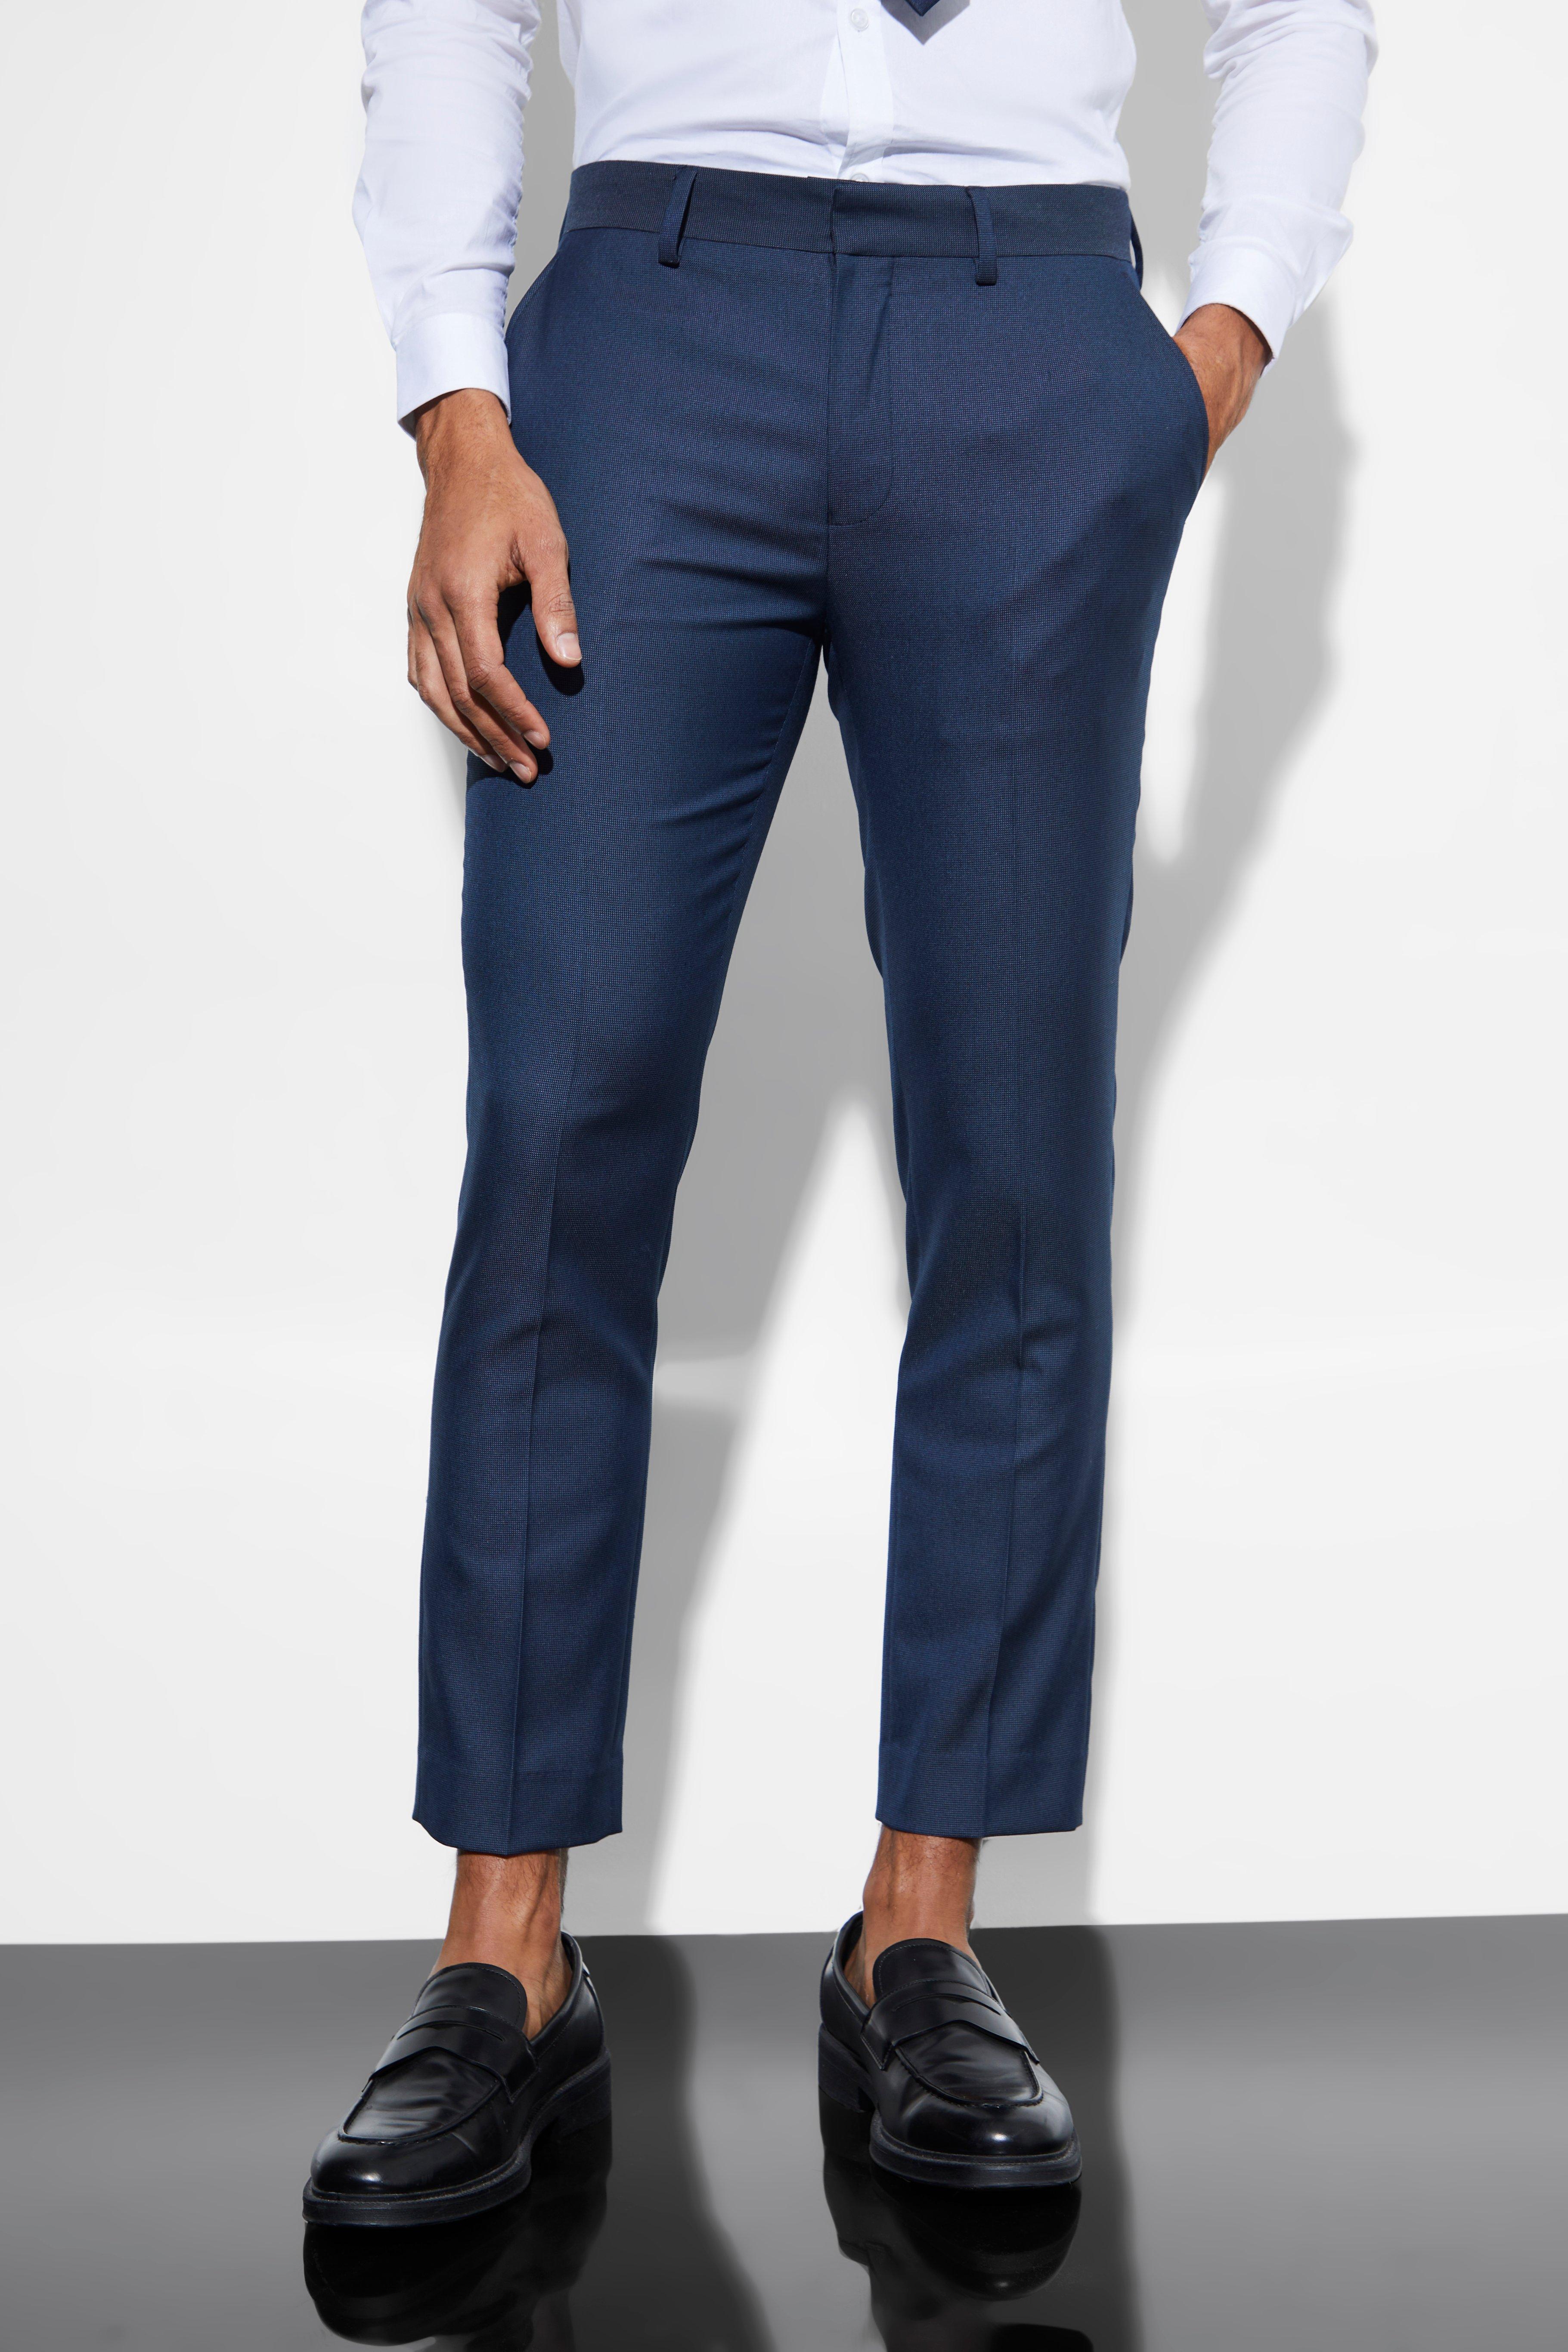 pantalon de costume court piqué homme - bleu - 32r, bleu